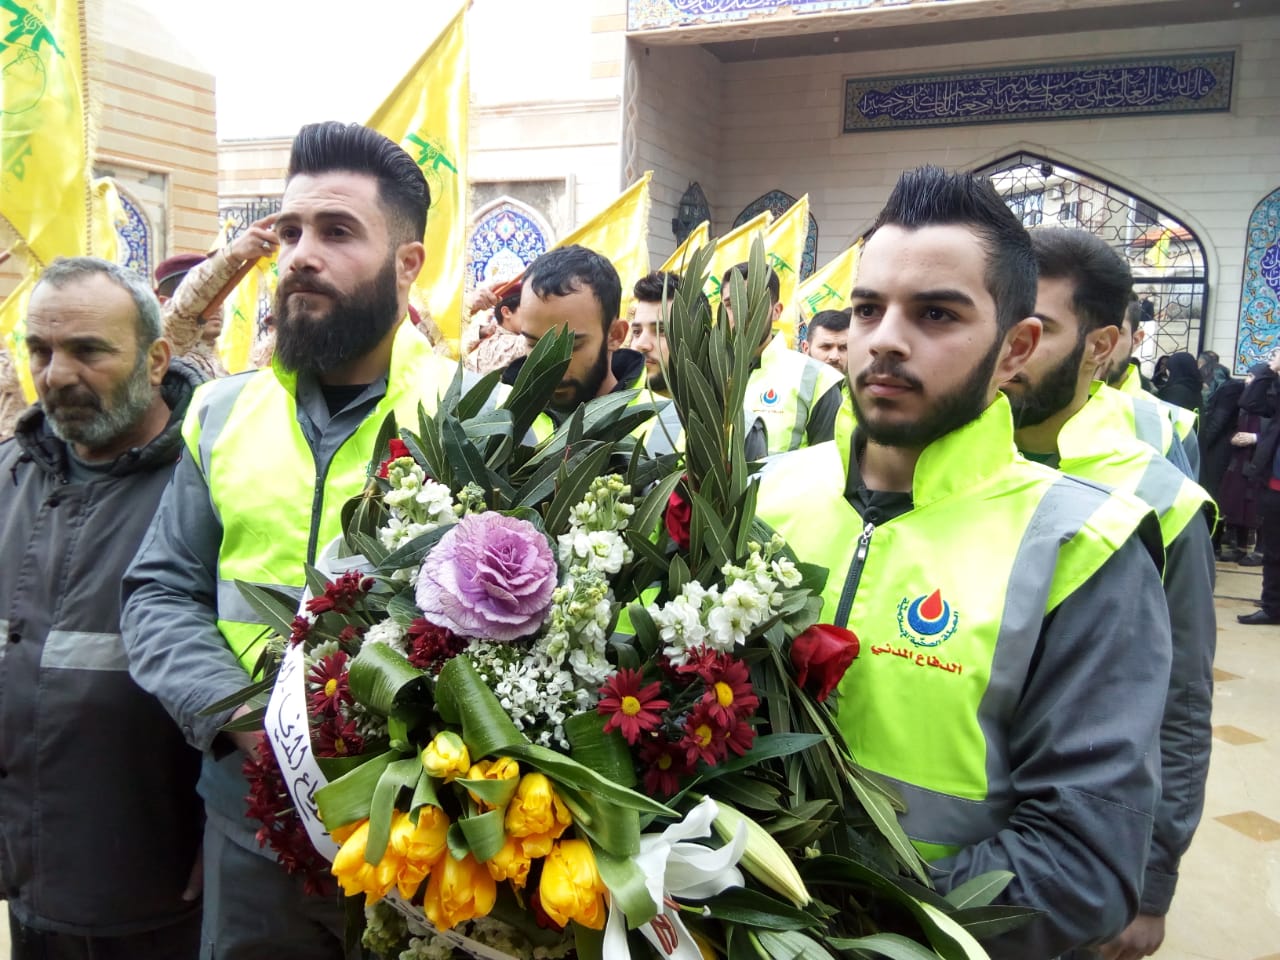 مديرية البقاع تضع اكليلاً من الورد على ضريح سيد شهداء المقاومة الاسلامية في النبي شيت